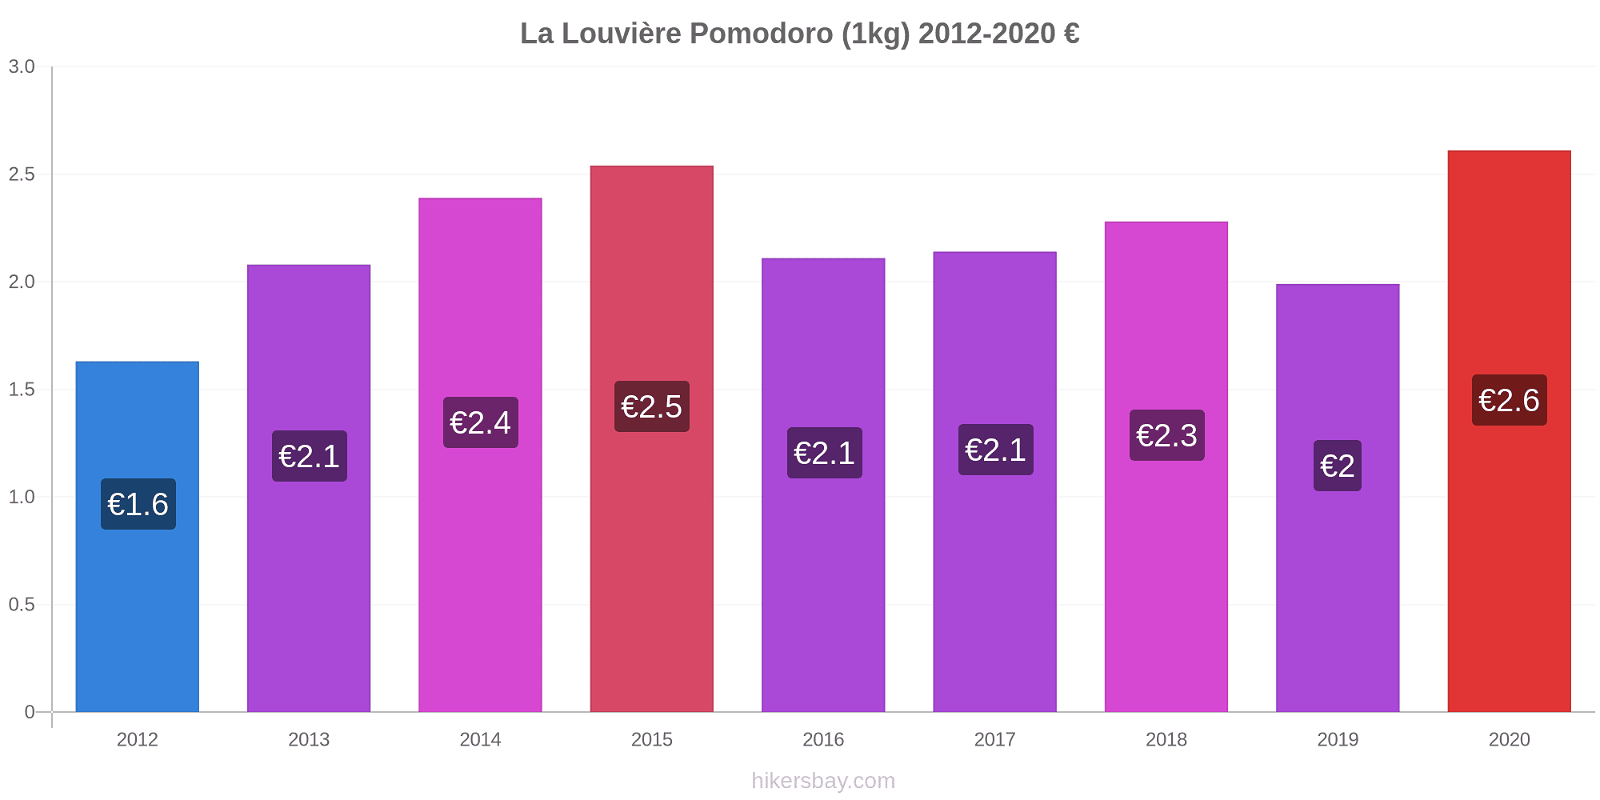 La Louvière variazioni di prezzo Pomodoro (1kg) hikersbay.com